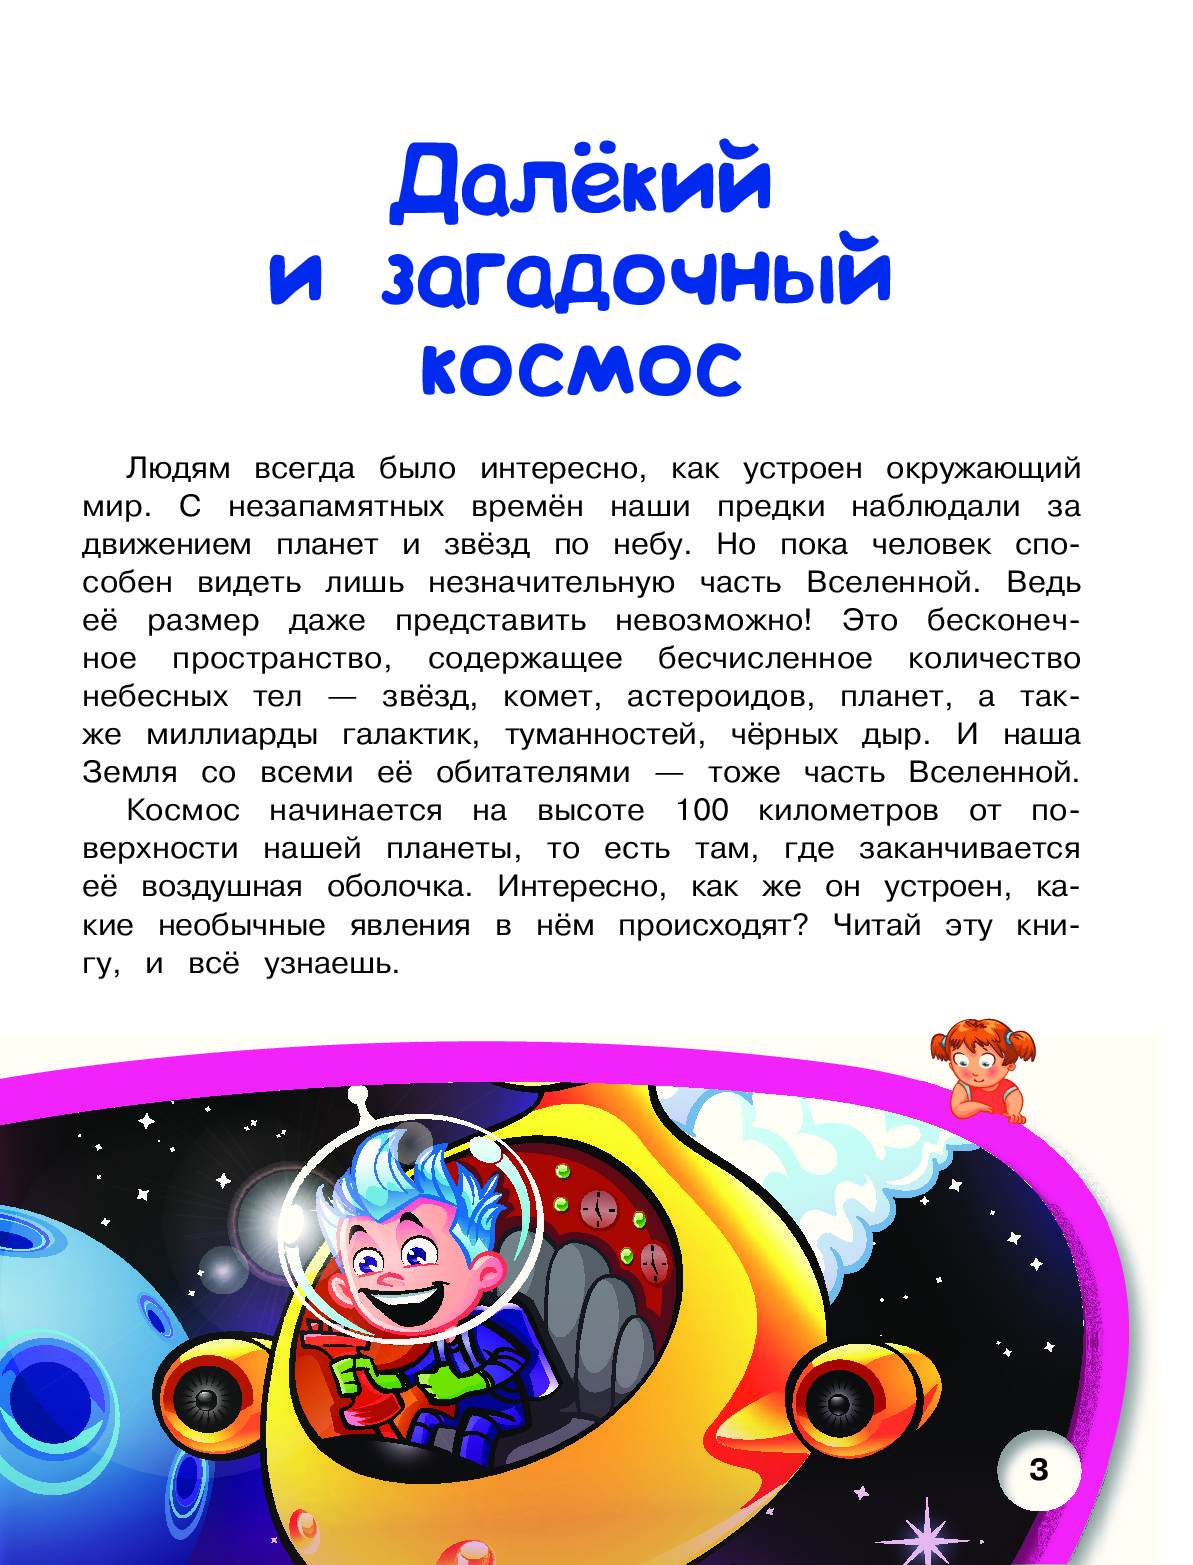 Читаем про космос детям 6 лет. Книжка космос для детей. Рассказ о космосе. Рассказ про космос для детей. Рассказ про космос для дошкольников.